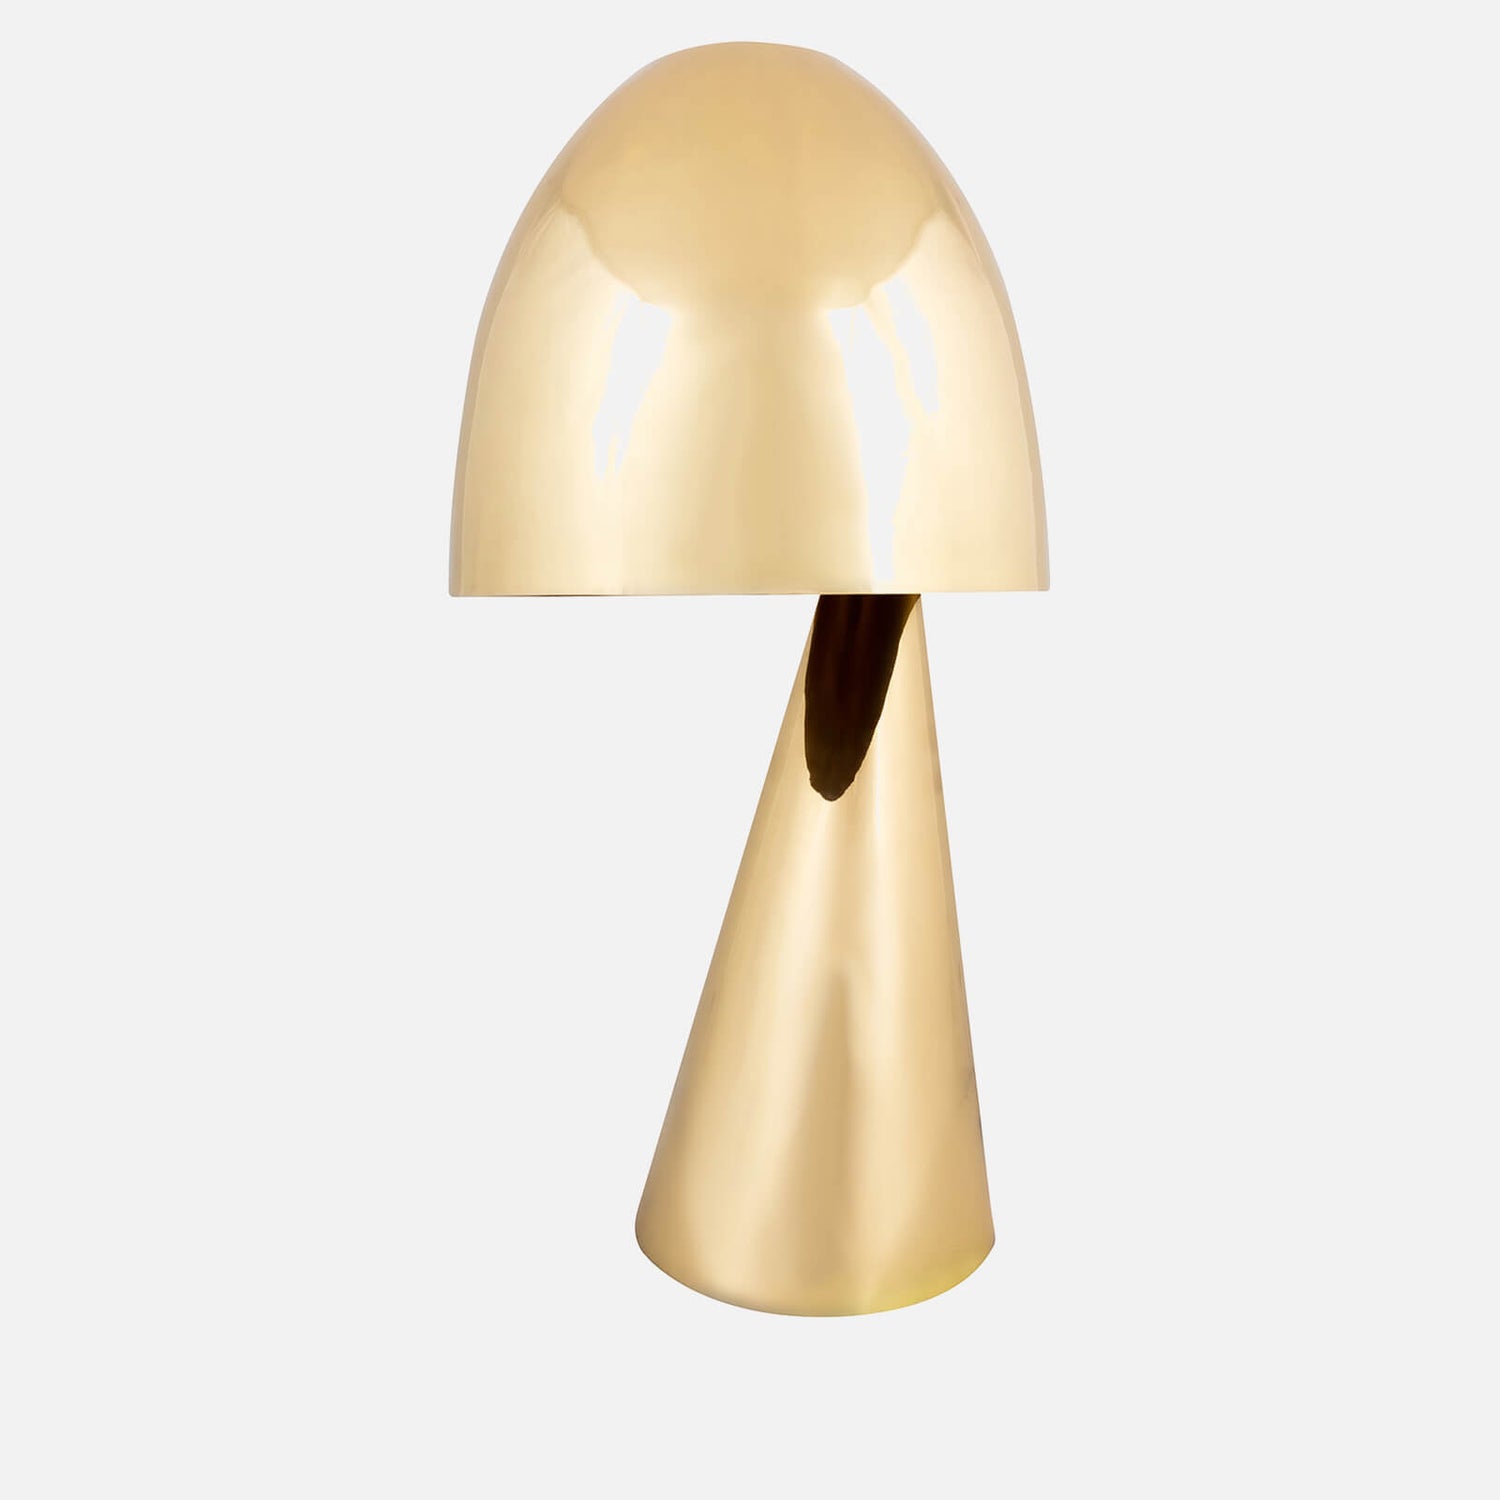 Day Birger et Mikkelsen Home Porto Table Lamp - Gold